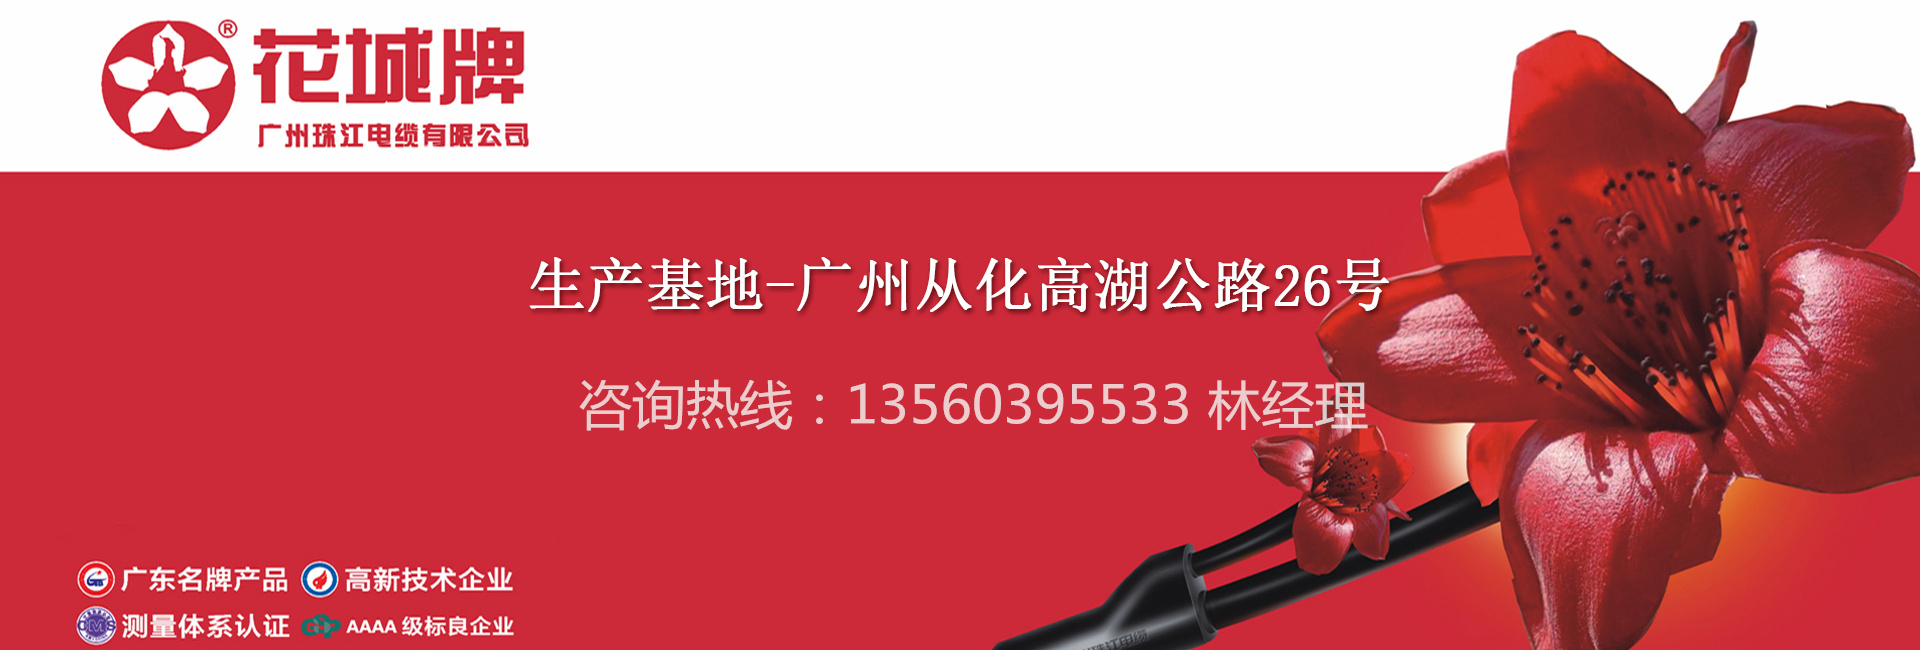 广州珠江电缆有限公司